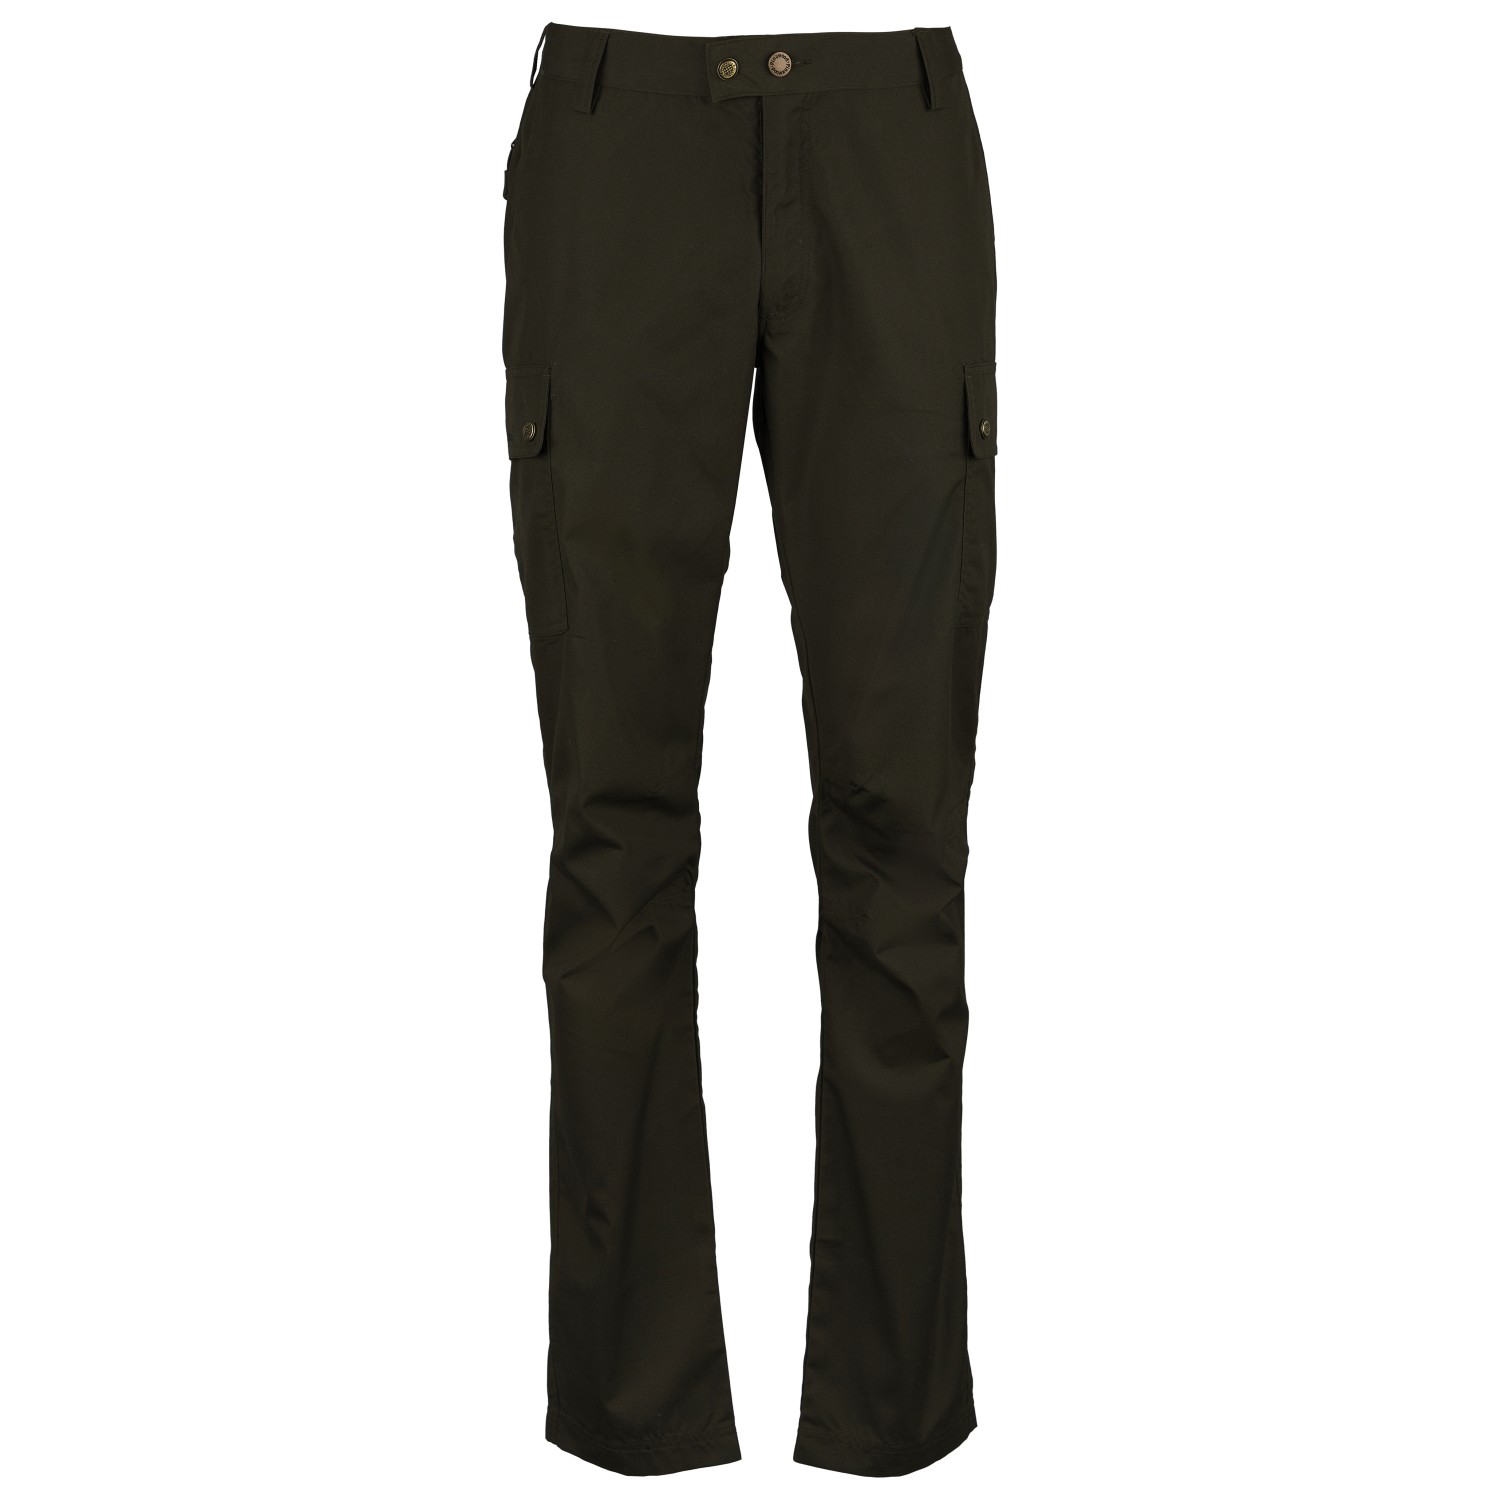 Трекинговые брюки Pinewood Finnveden Classic Trousers, цвет Moss Green